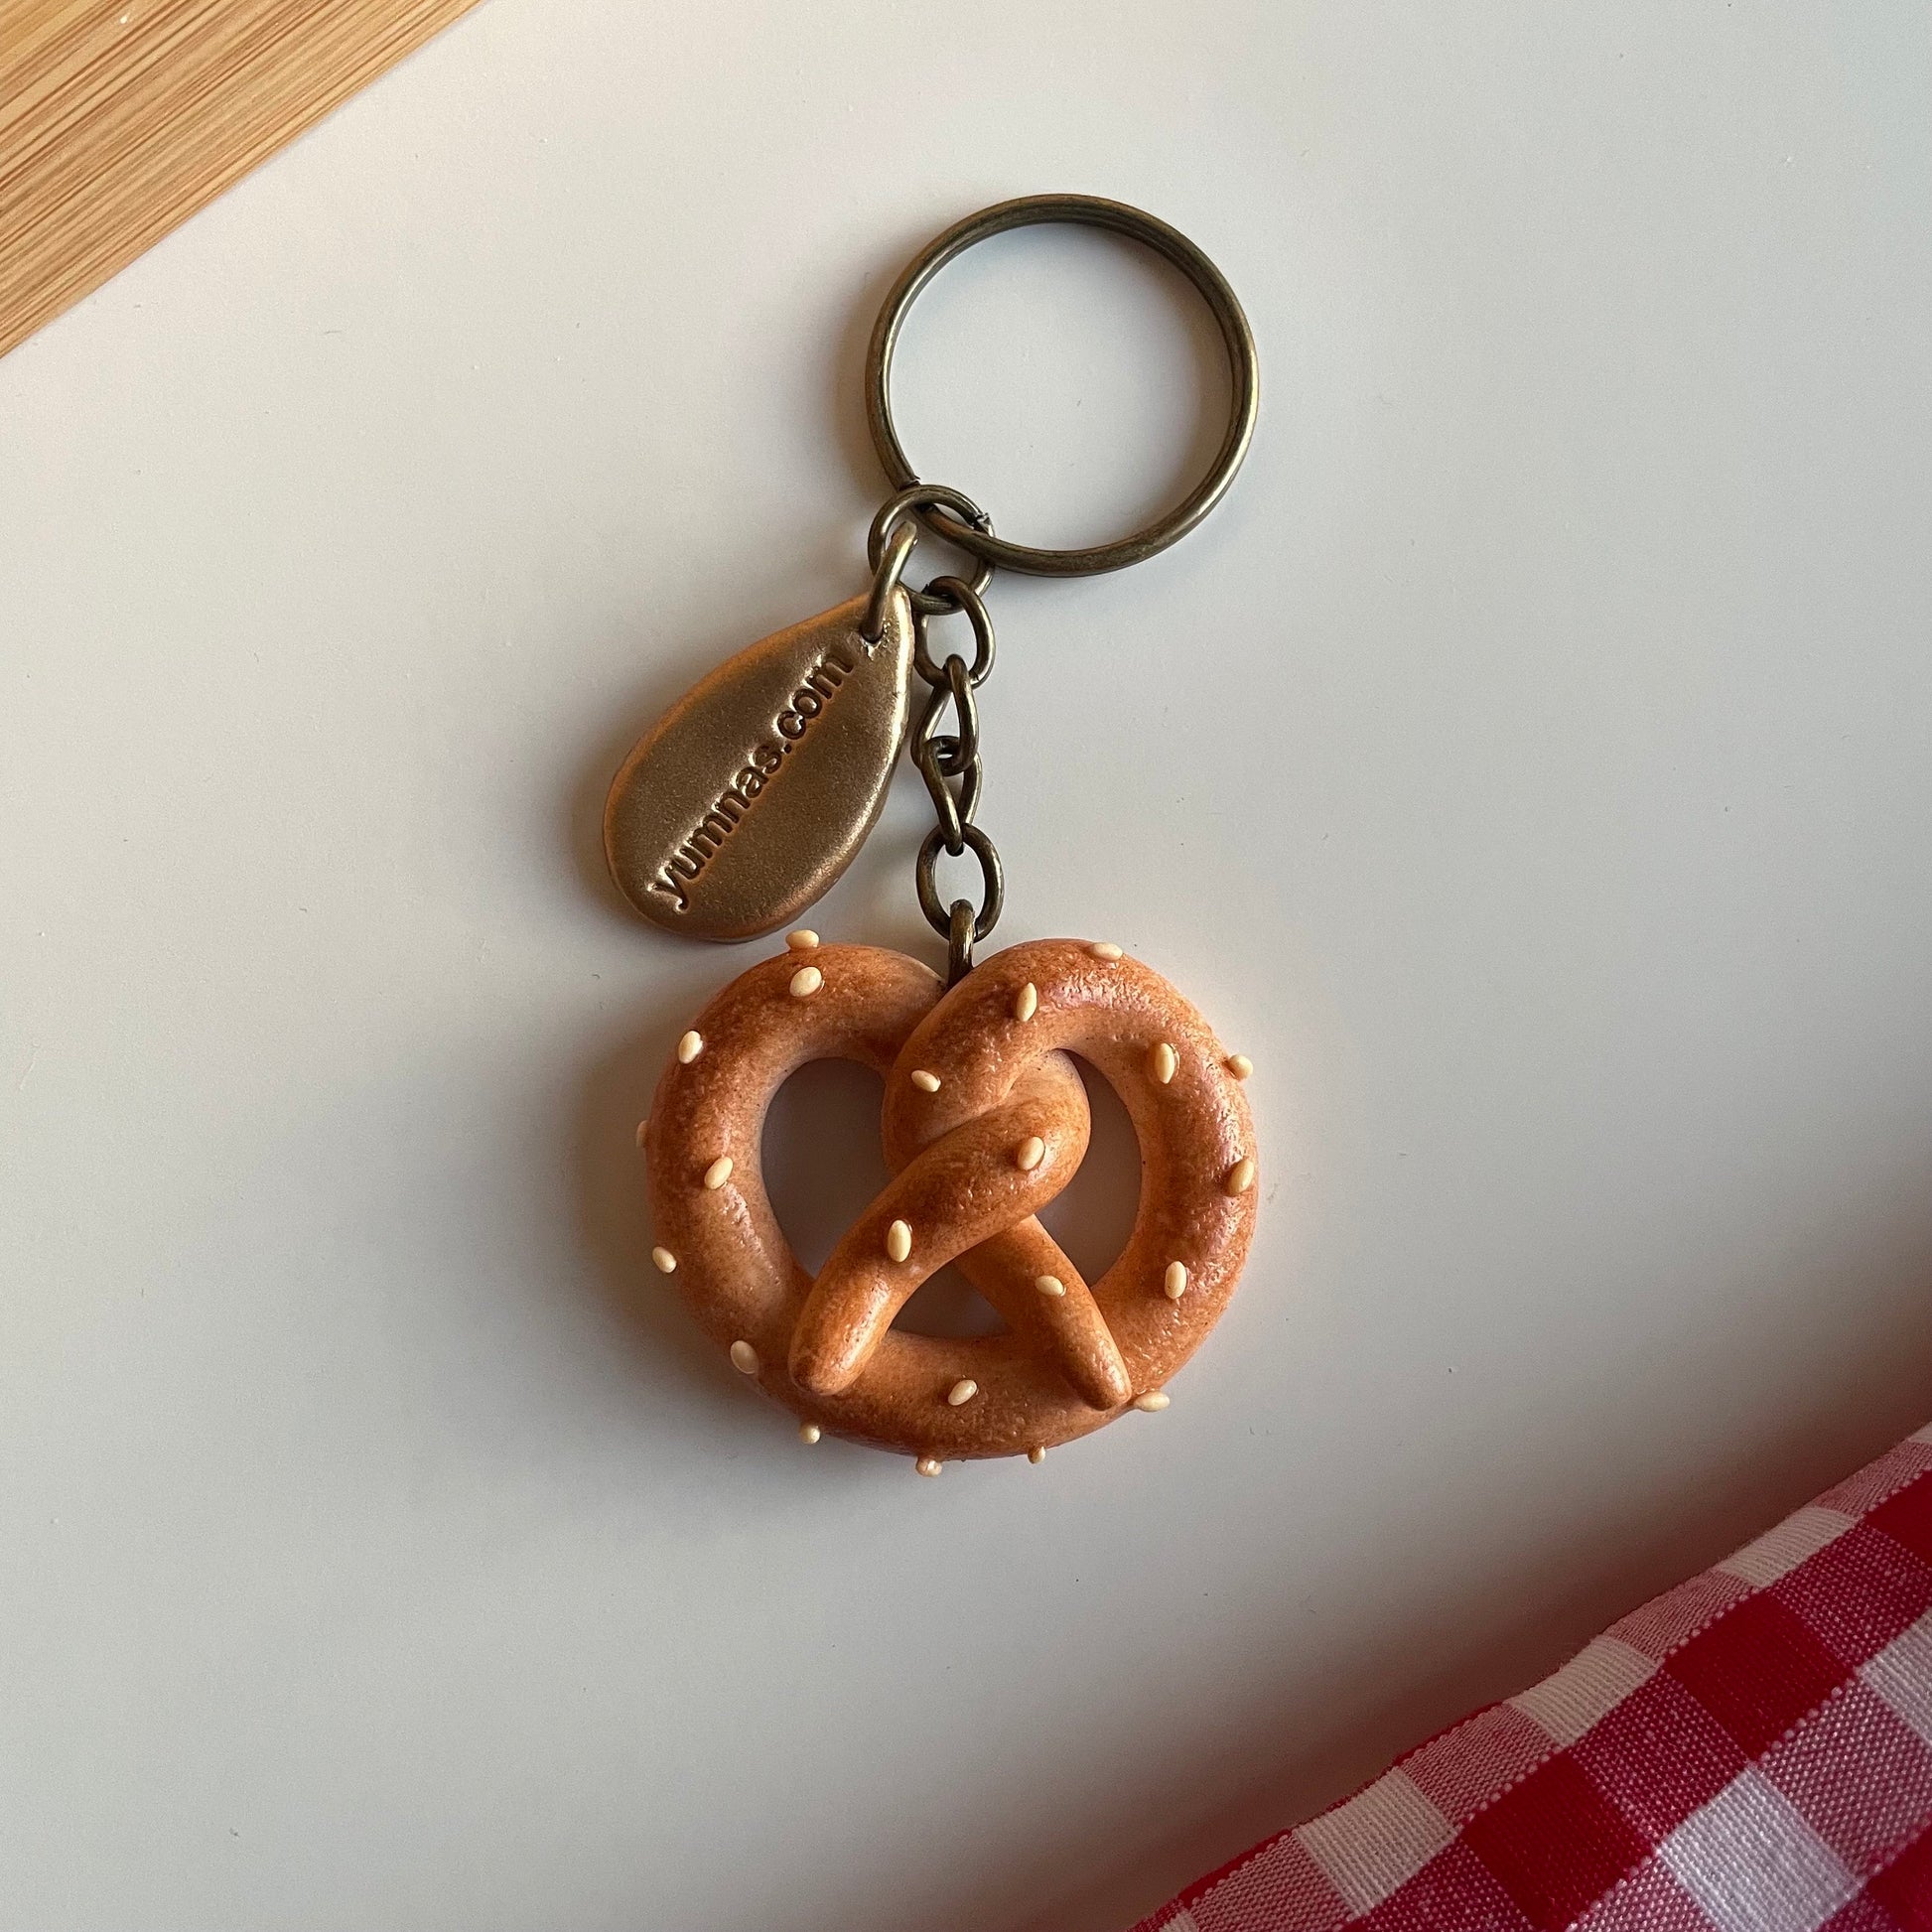 Pretzel keychain, cute keychain, pretzel keyring, novelty keychain, polymerclay charm, clay keyring, realistic food charm, miniature food